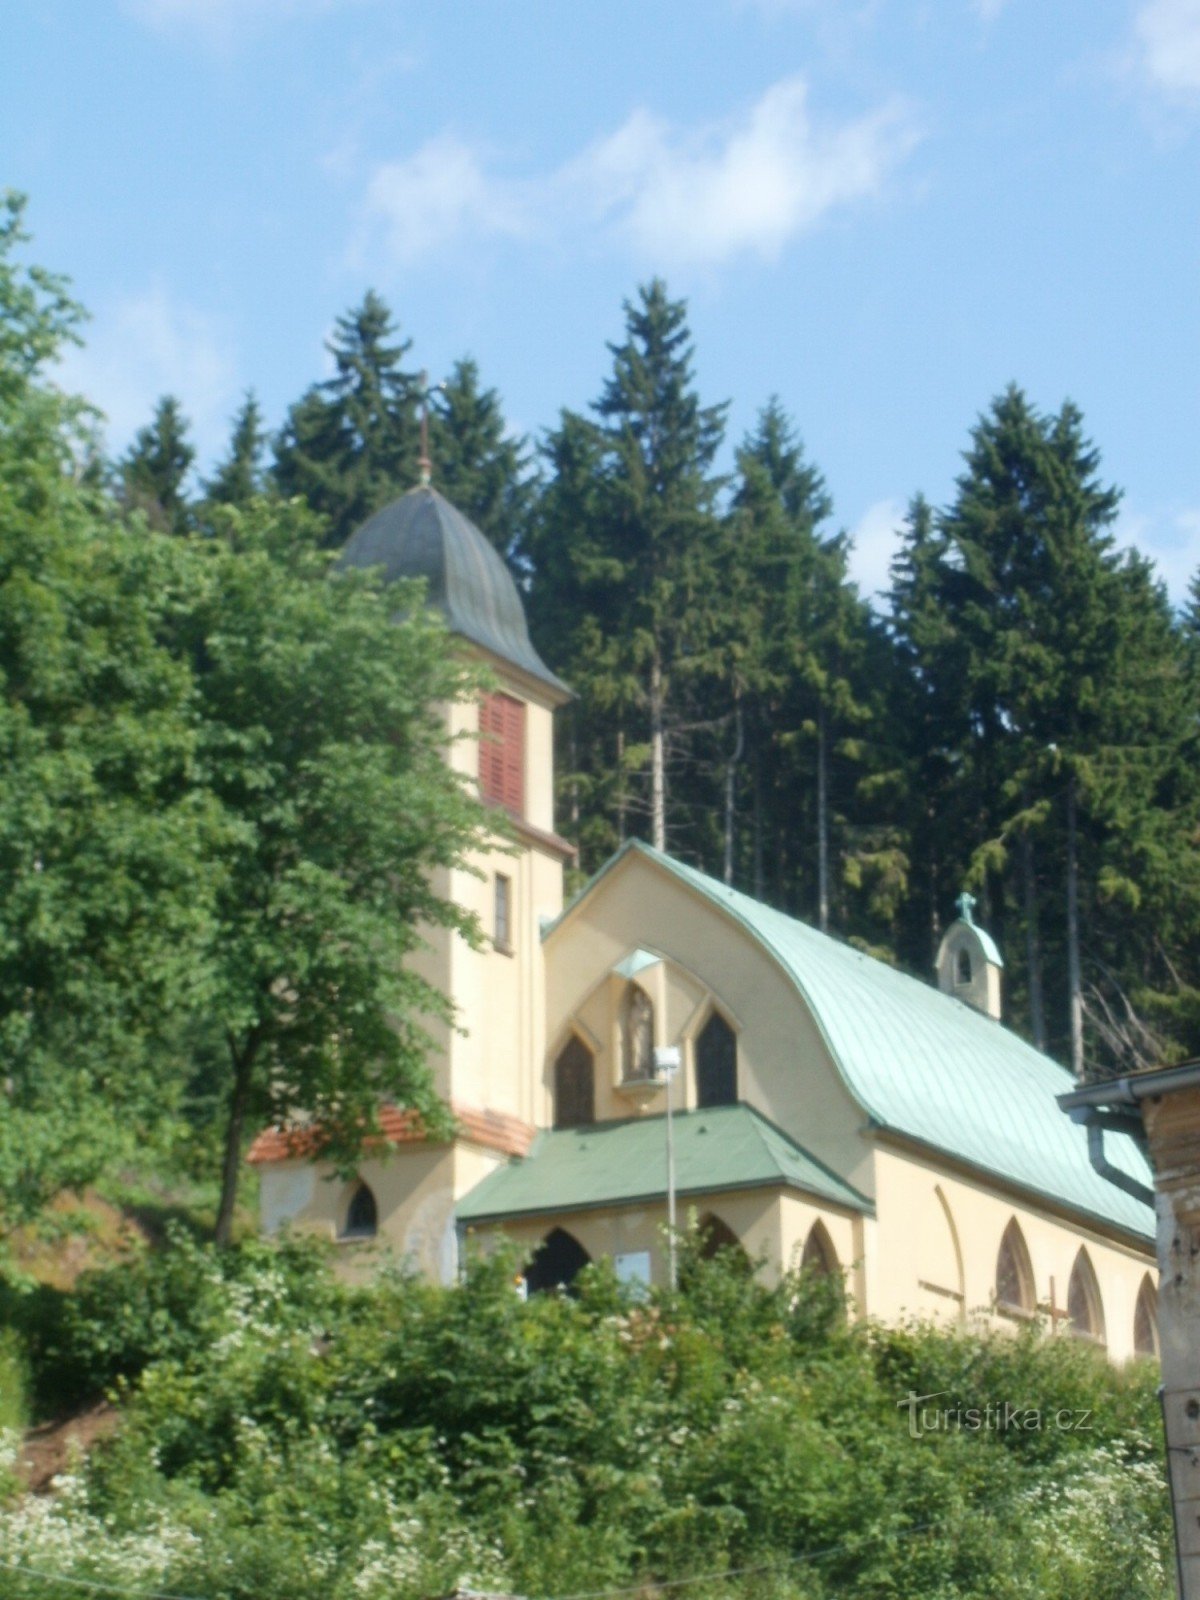 Dolní Maršov - igreja de St. Joseph